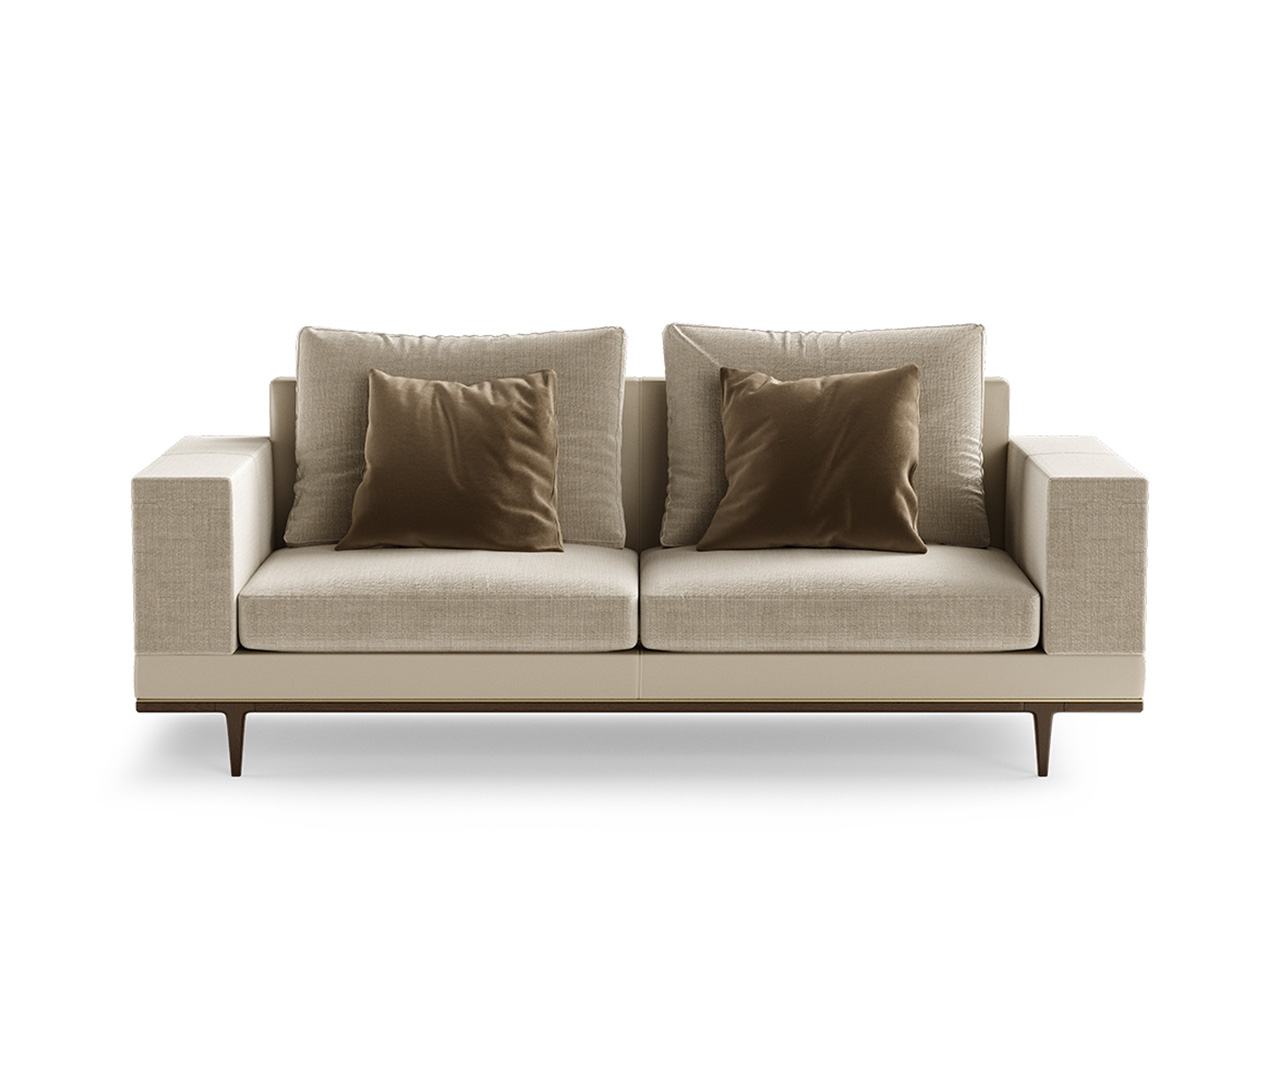 Wooden Legs Upholstered Sofa